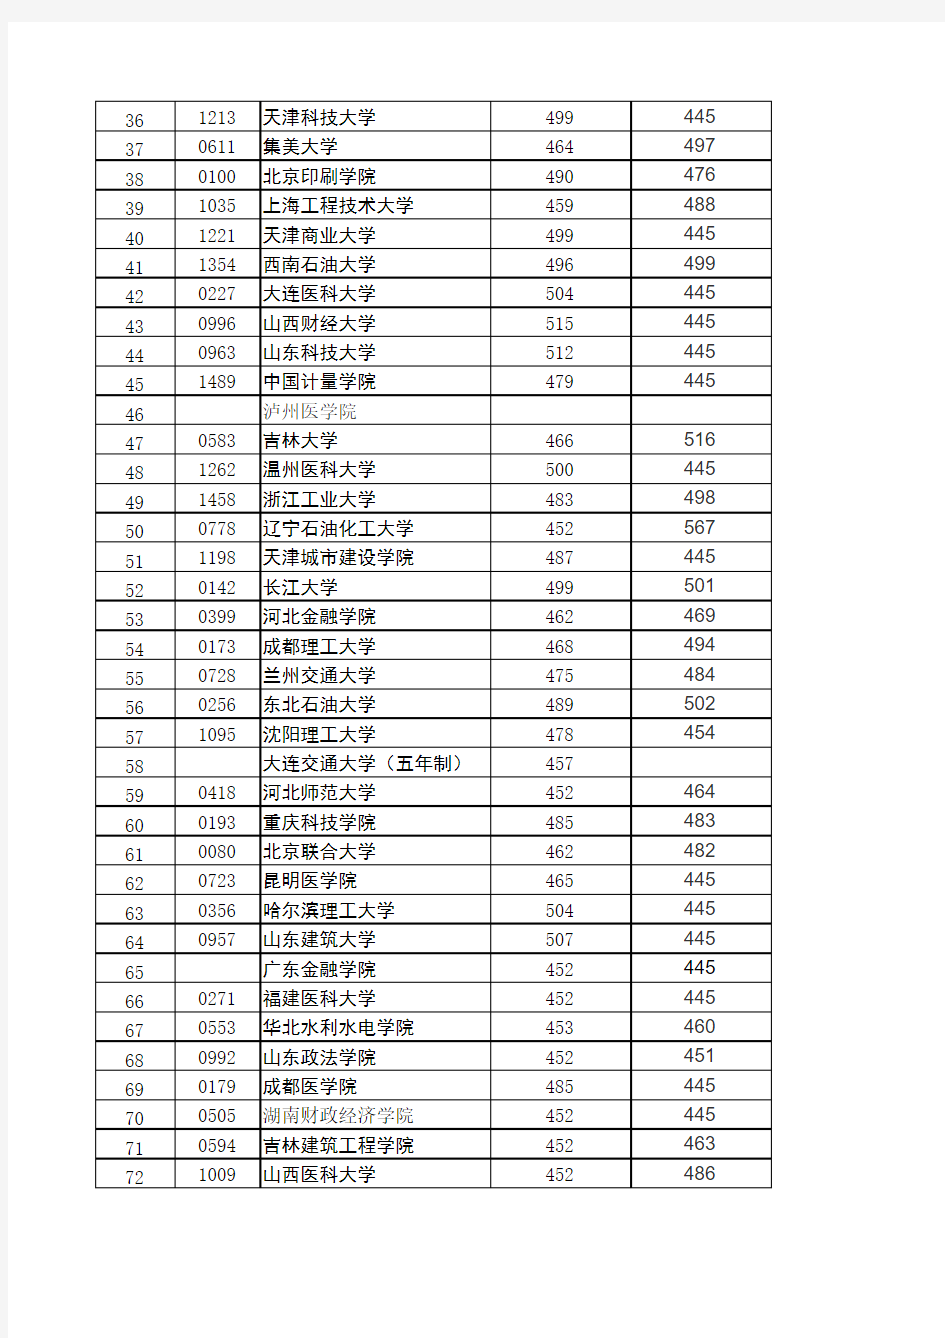 2011-2014辽宁省高考理科二本最低录取分数线及2015预测